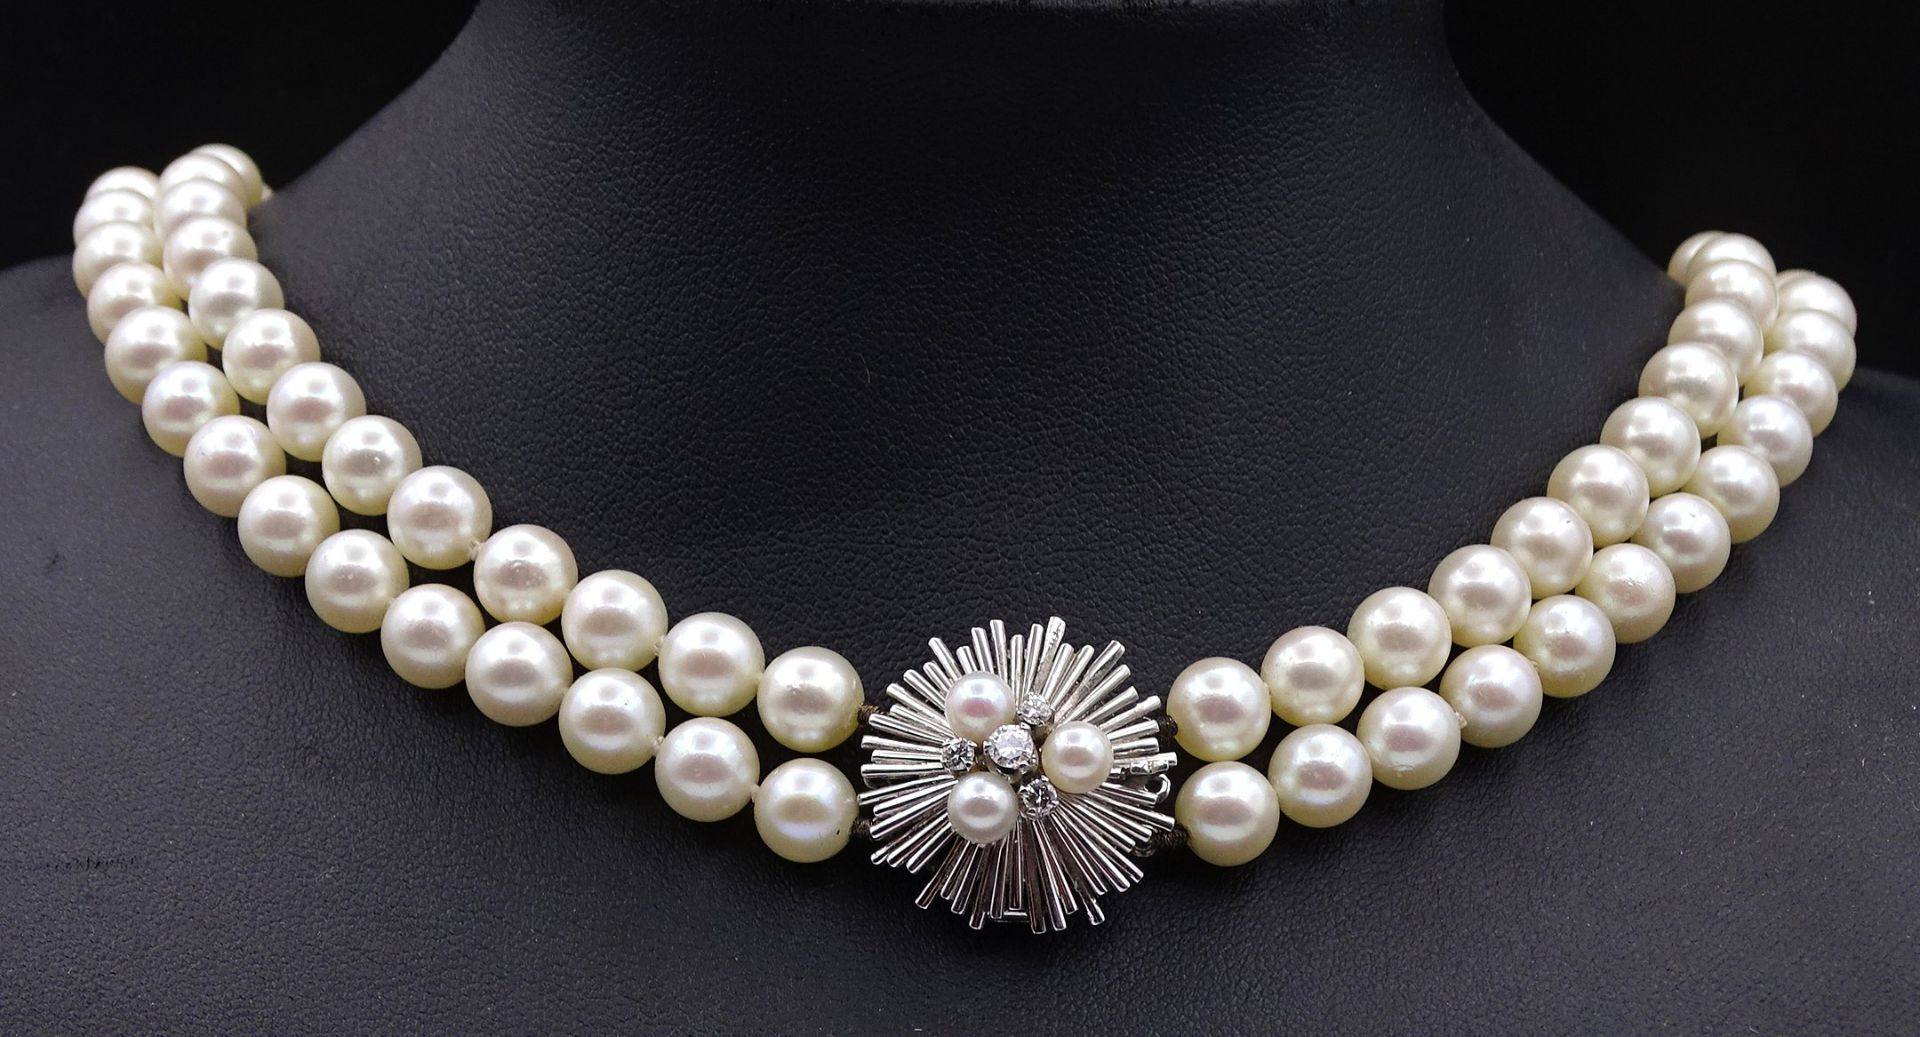 2-reihige Perlen Halskette mit Weißgoldverschluss 750/000, Verschluss mit 3 Perlen und 4 Brillanten - Image 2 of 11